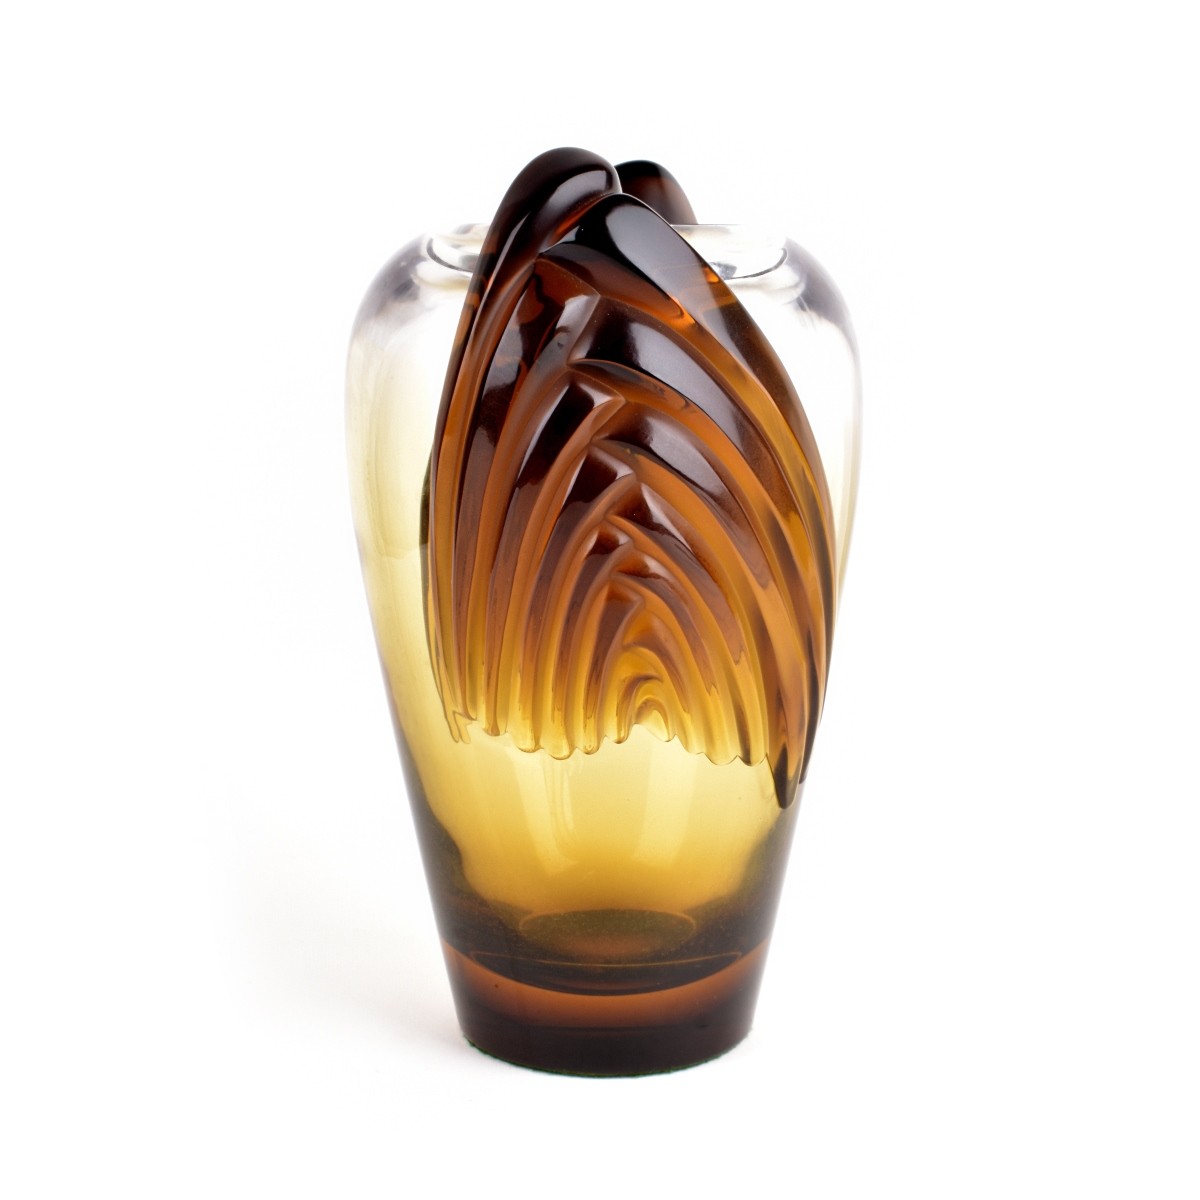 Lalique "Marrakech" Vase